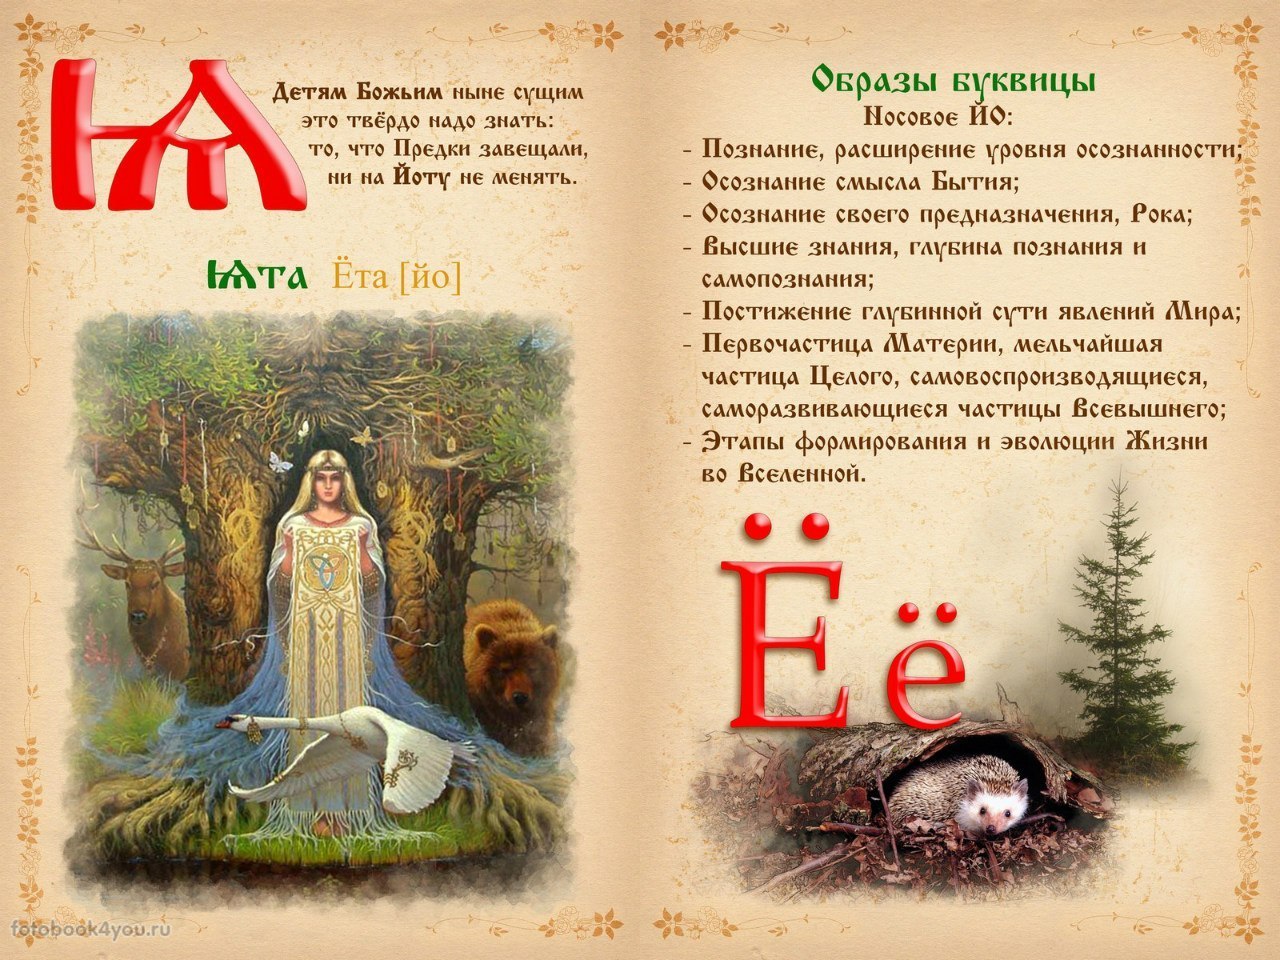 Русская азбука